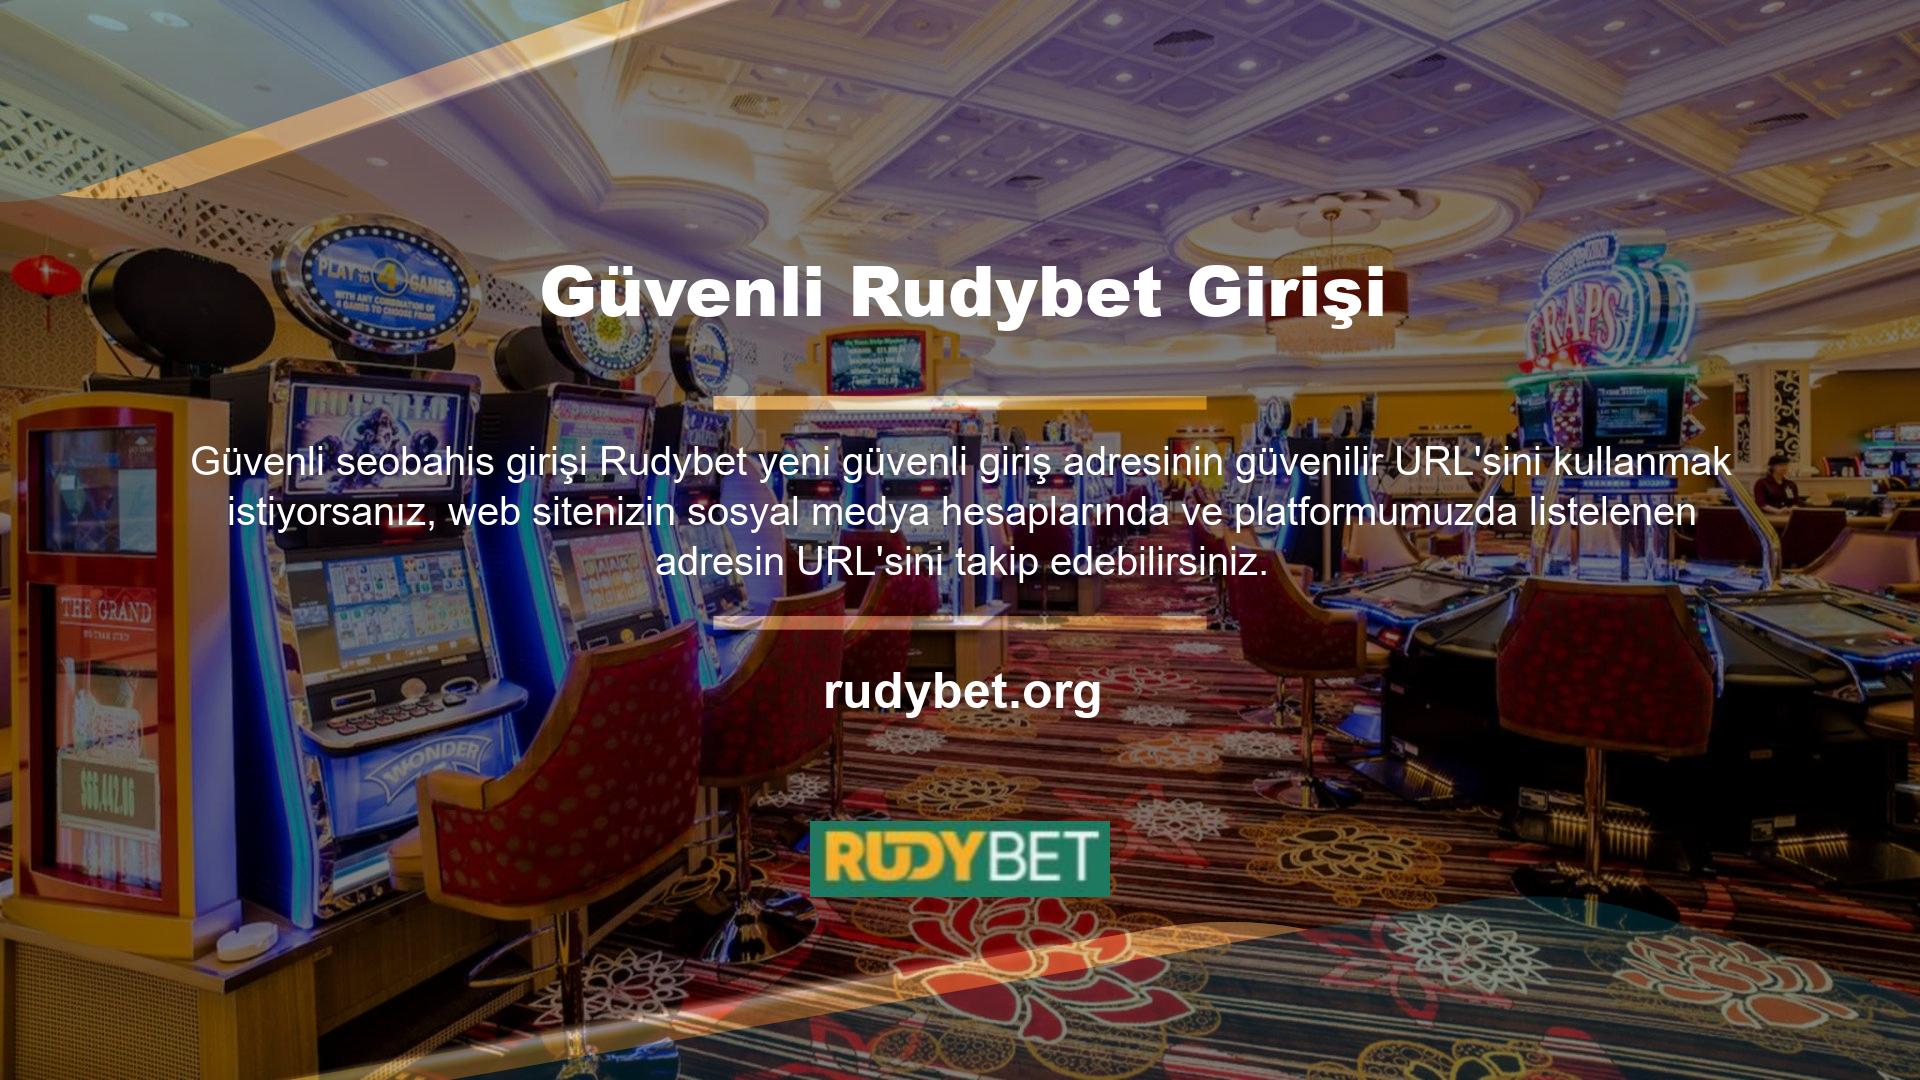 Rudybet web sitesi sahte platform açılabilmektedir